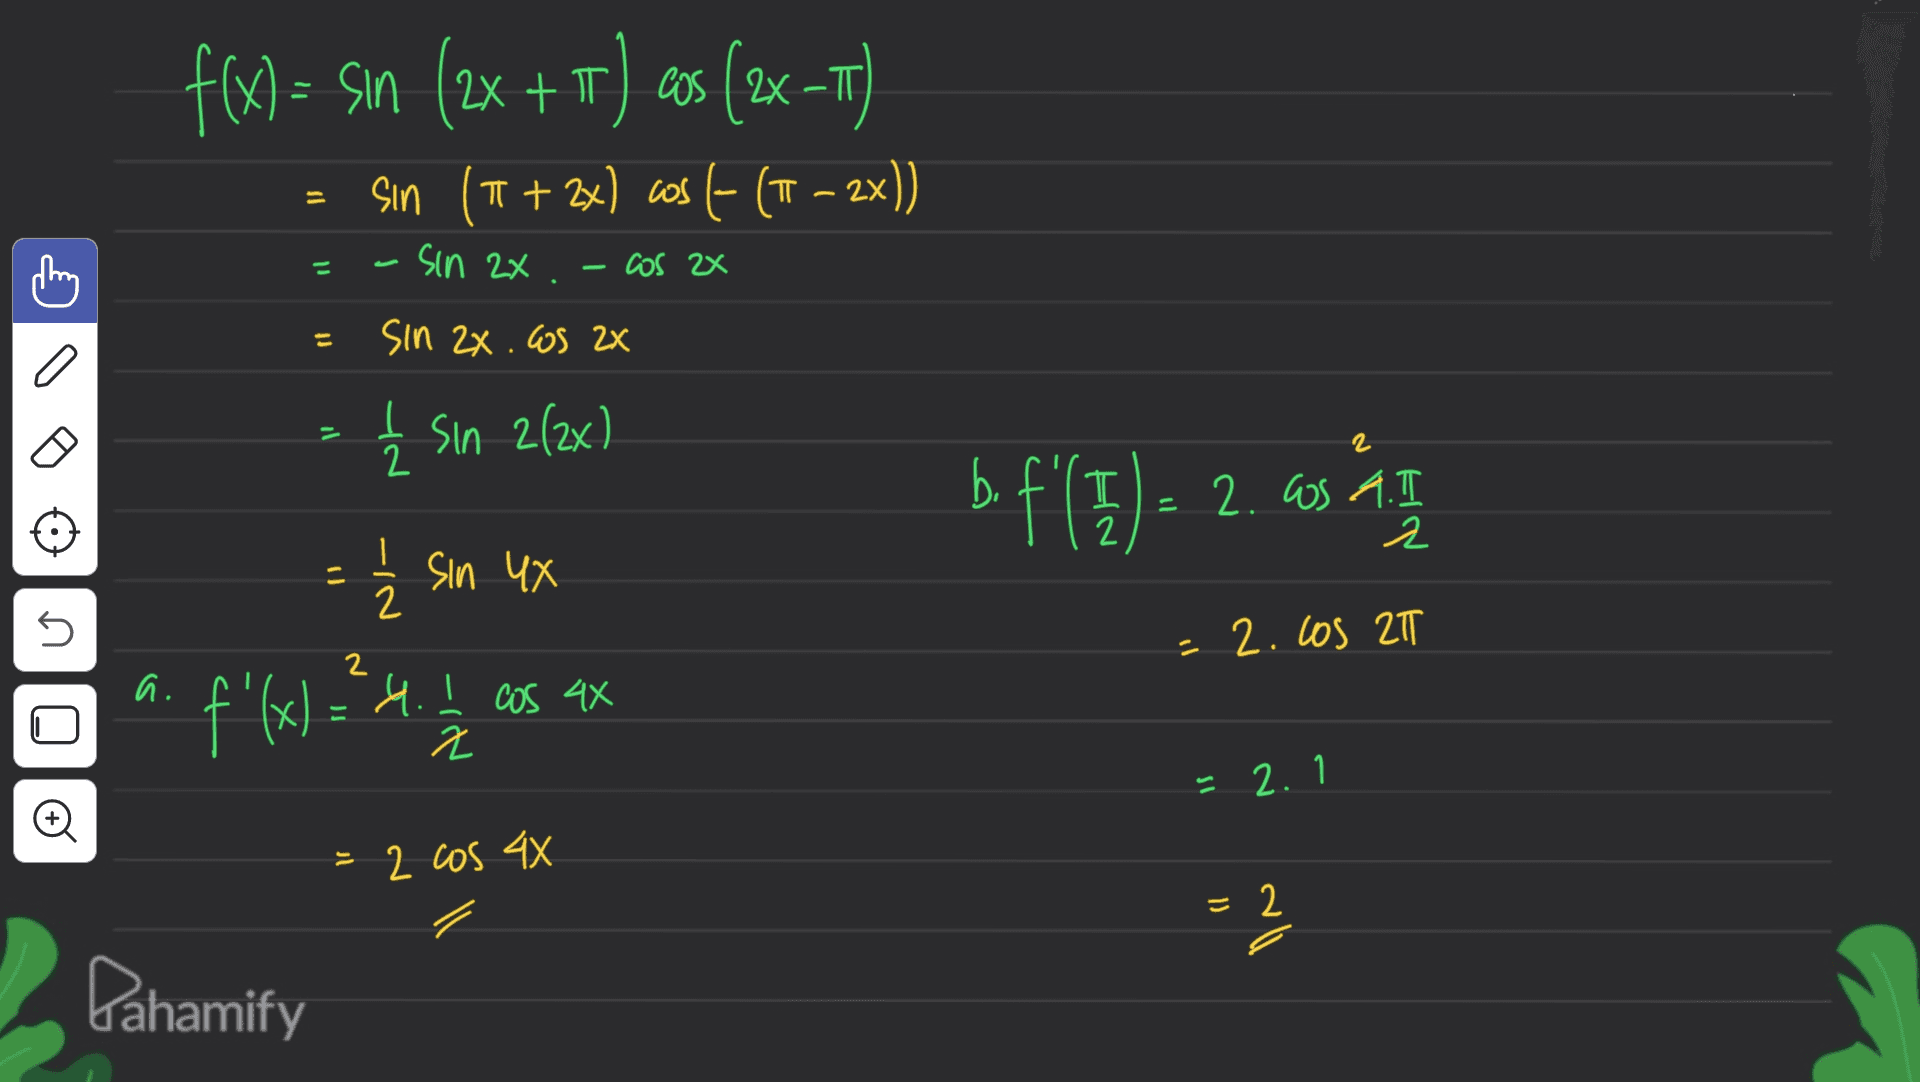 f(x) =- Sın (2x + 1) cos (2x -T) Sin (1 + 2x) cos [- (IT – 2x)) = sin 2x il COS 2X E sin 2x. Cos 2x o = I 2 į Sin 2(2x) b f'( 2 ) = 2.6s 4 WS AT 2 - į sin ux 5 = 2.los 2T a. f'(x) = ²4. I cas ax 2 s! 2. 1 = 2 cos 4x = 2 Pahamify 